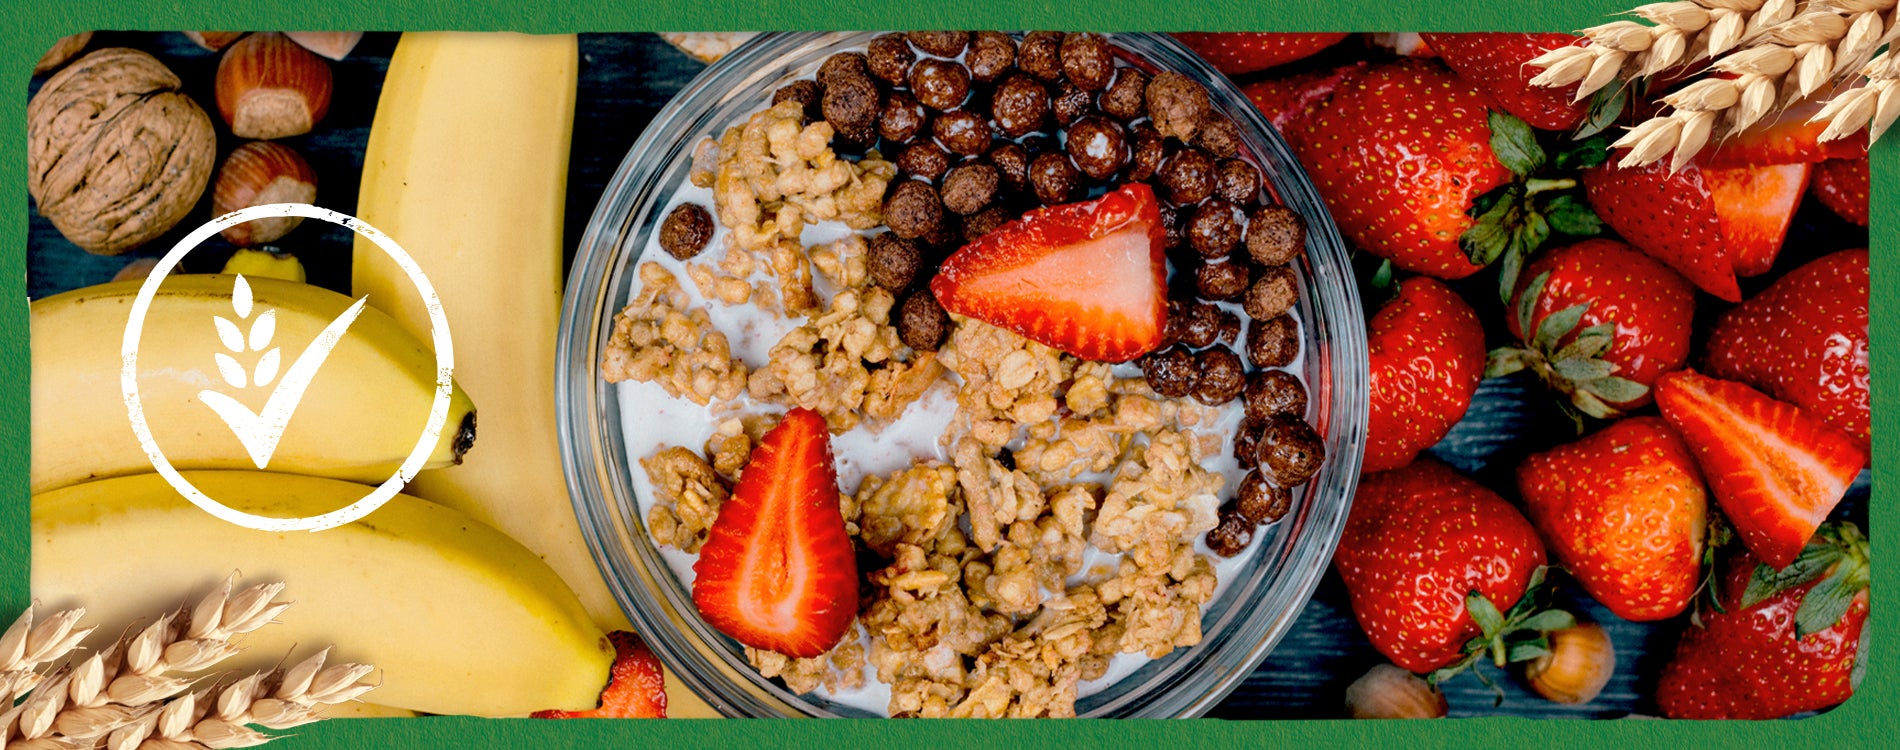 ¿Y al desayuno un desayuno saludable?: Cereales